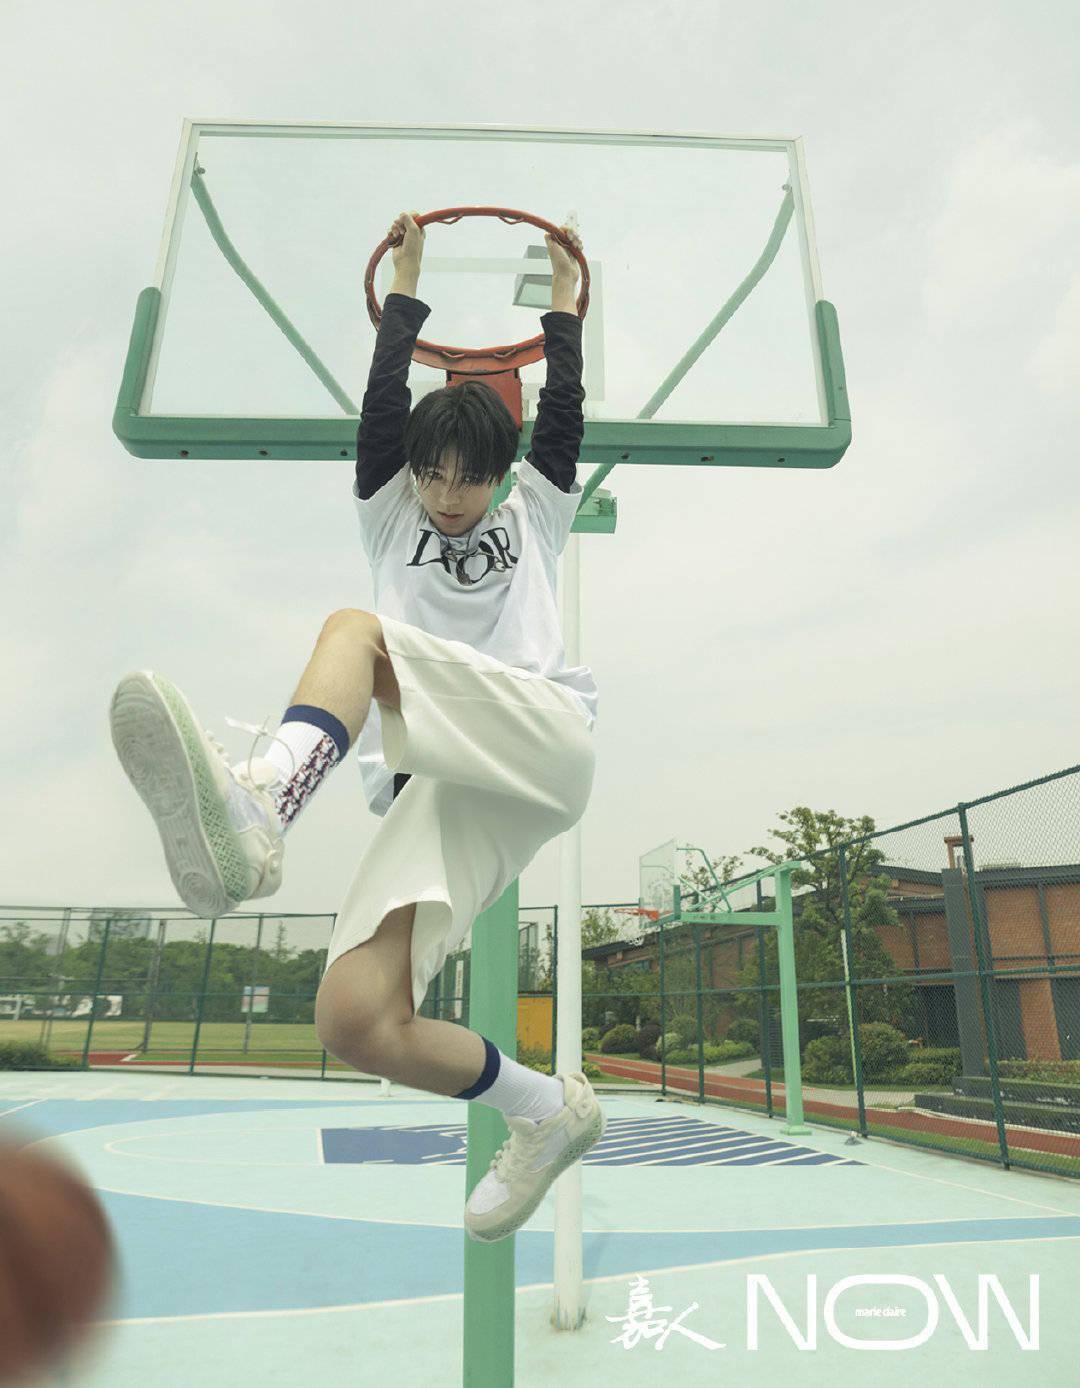 王俊凯成长对比图照来袭,活力四射的篮球少年